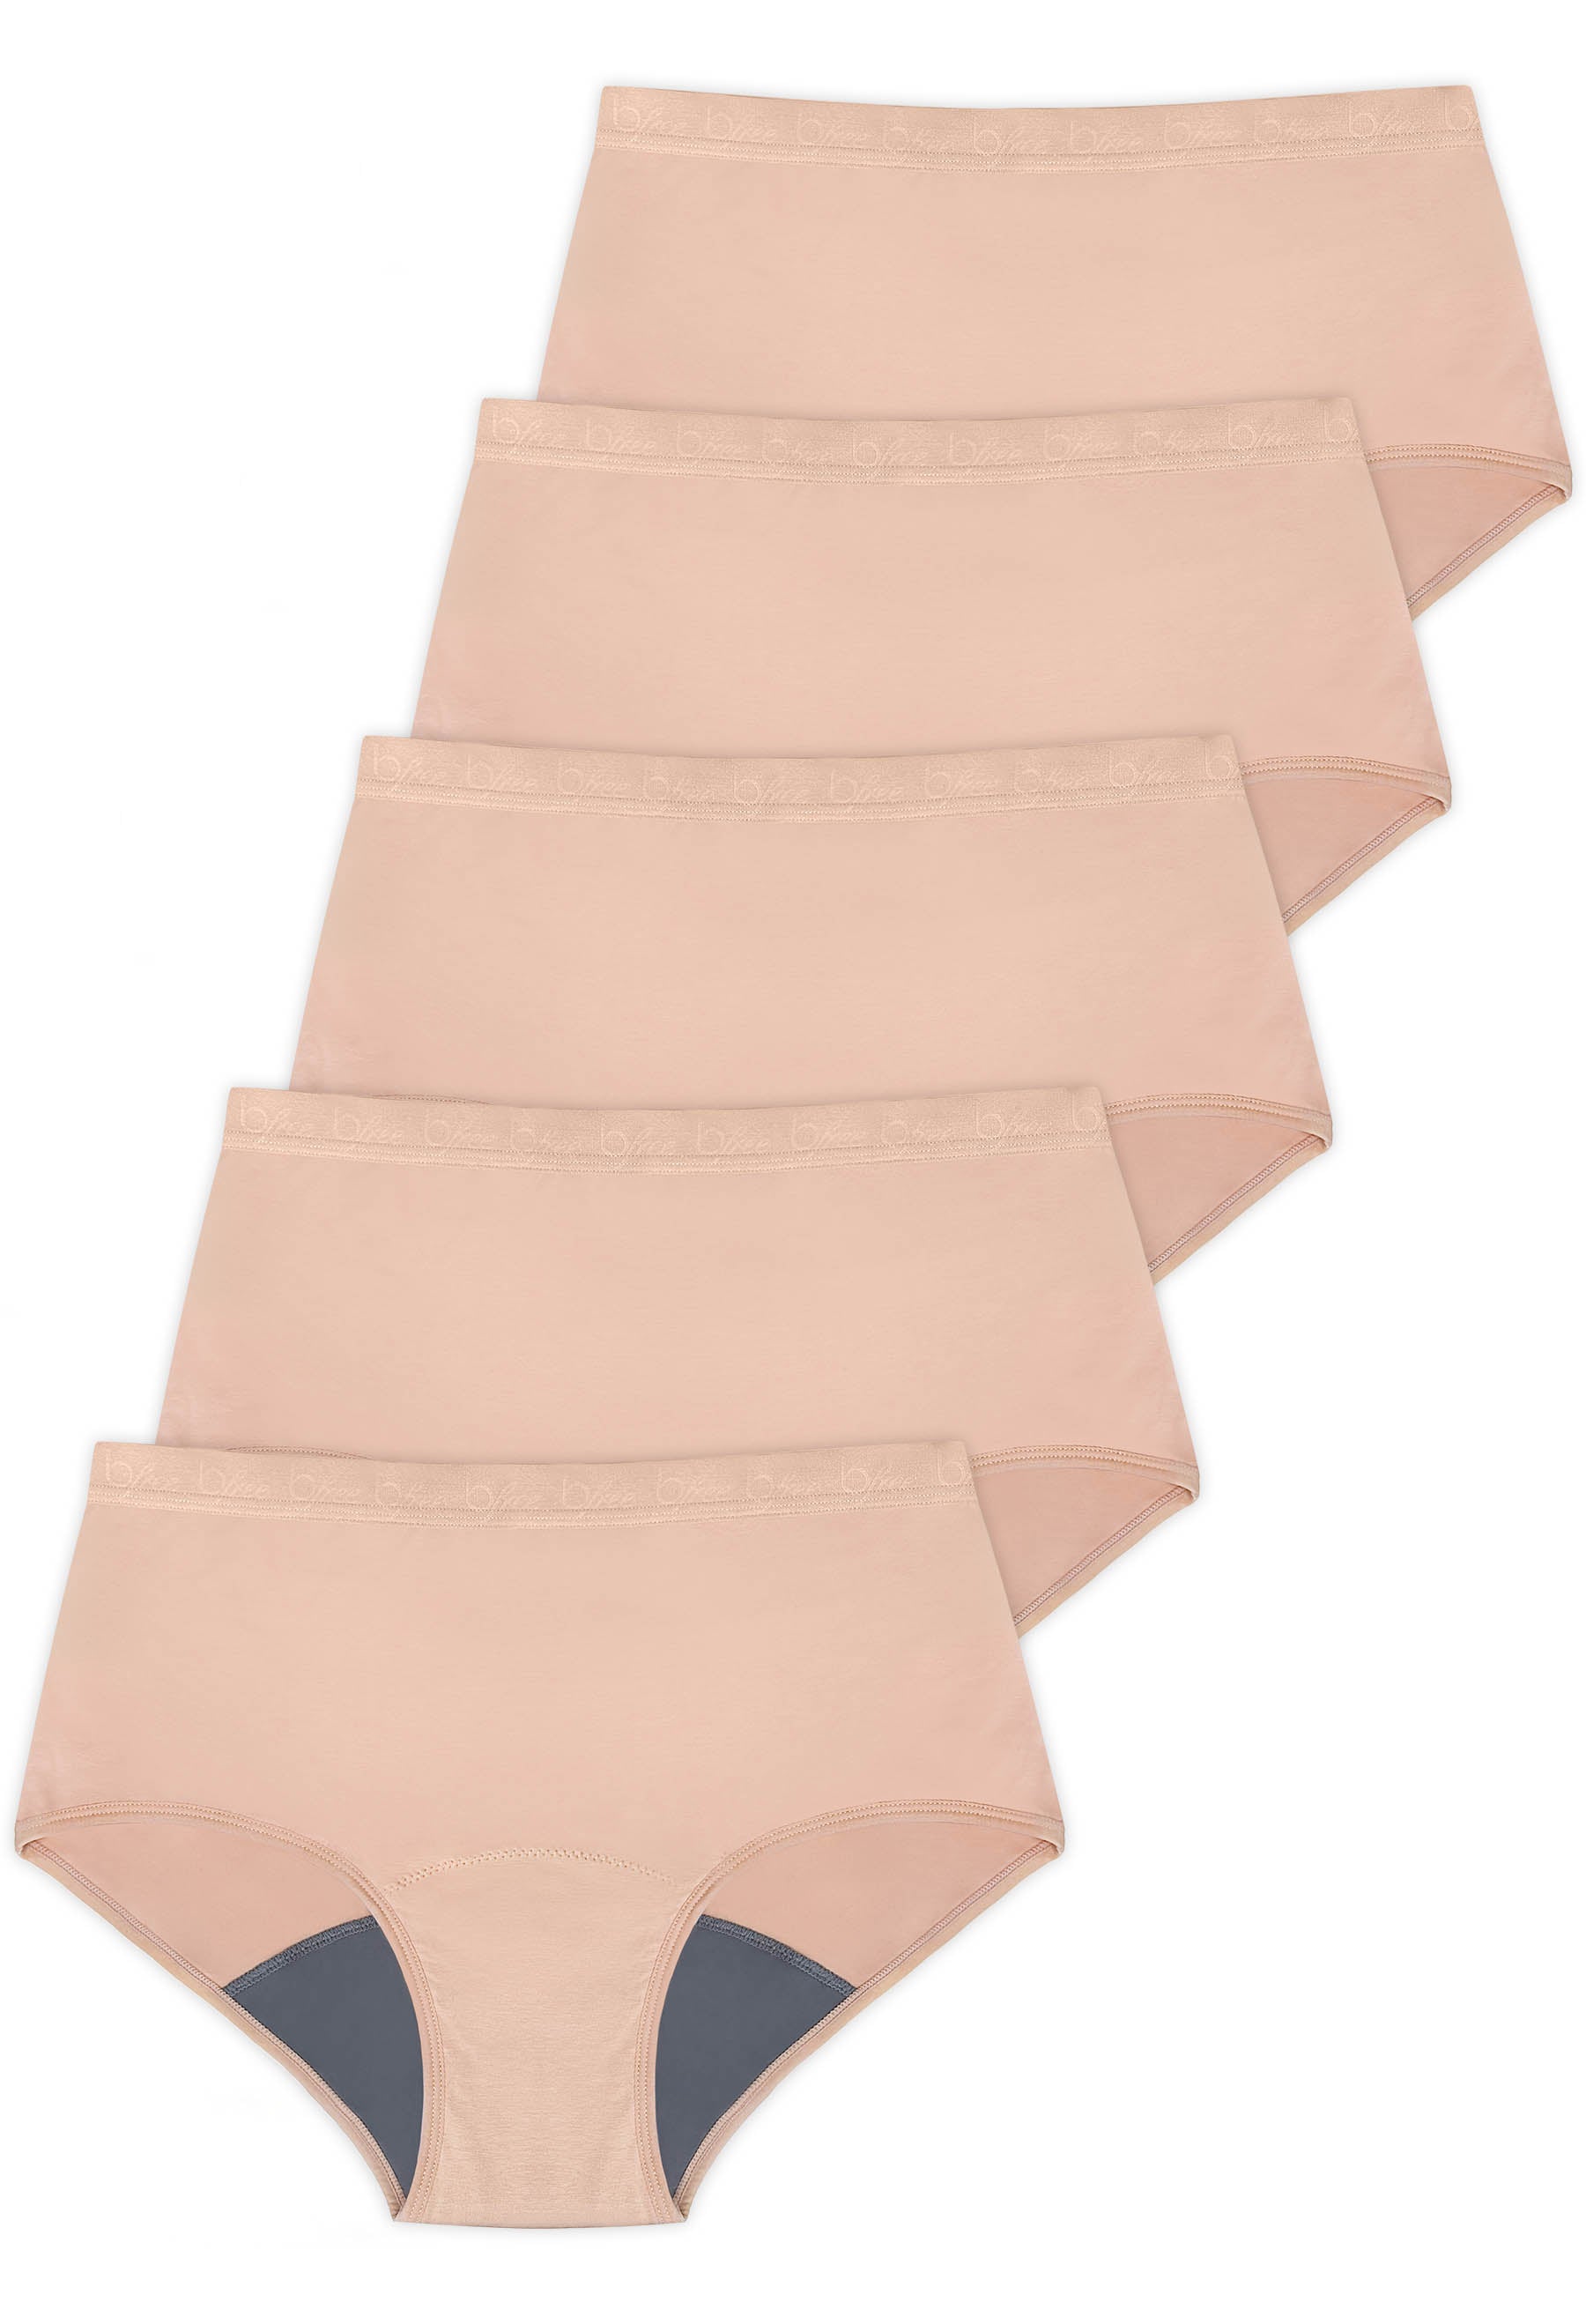 Ladies 5 Pack Seamless Briefs and Cotton Period Underwear